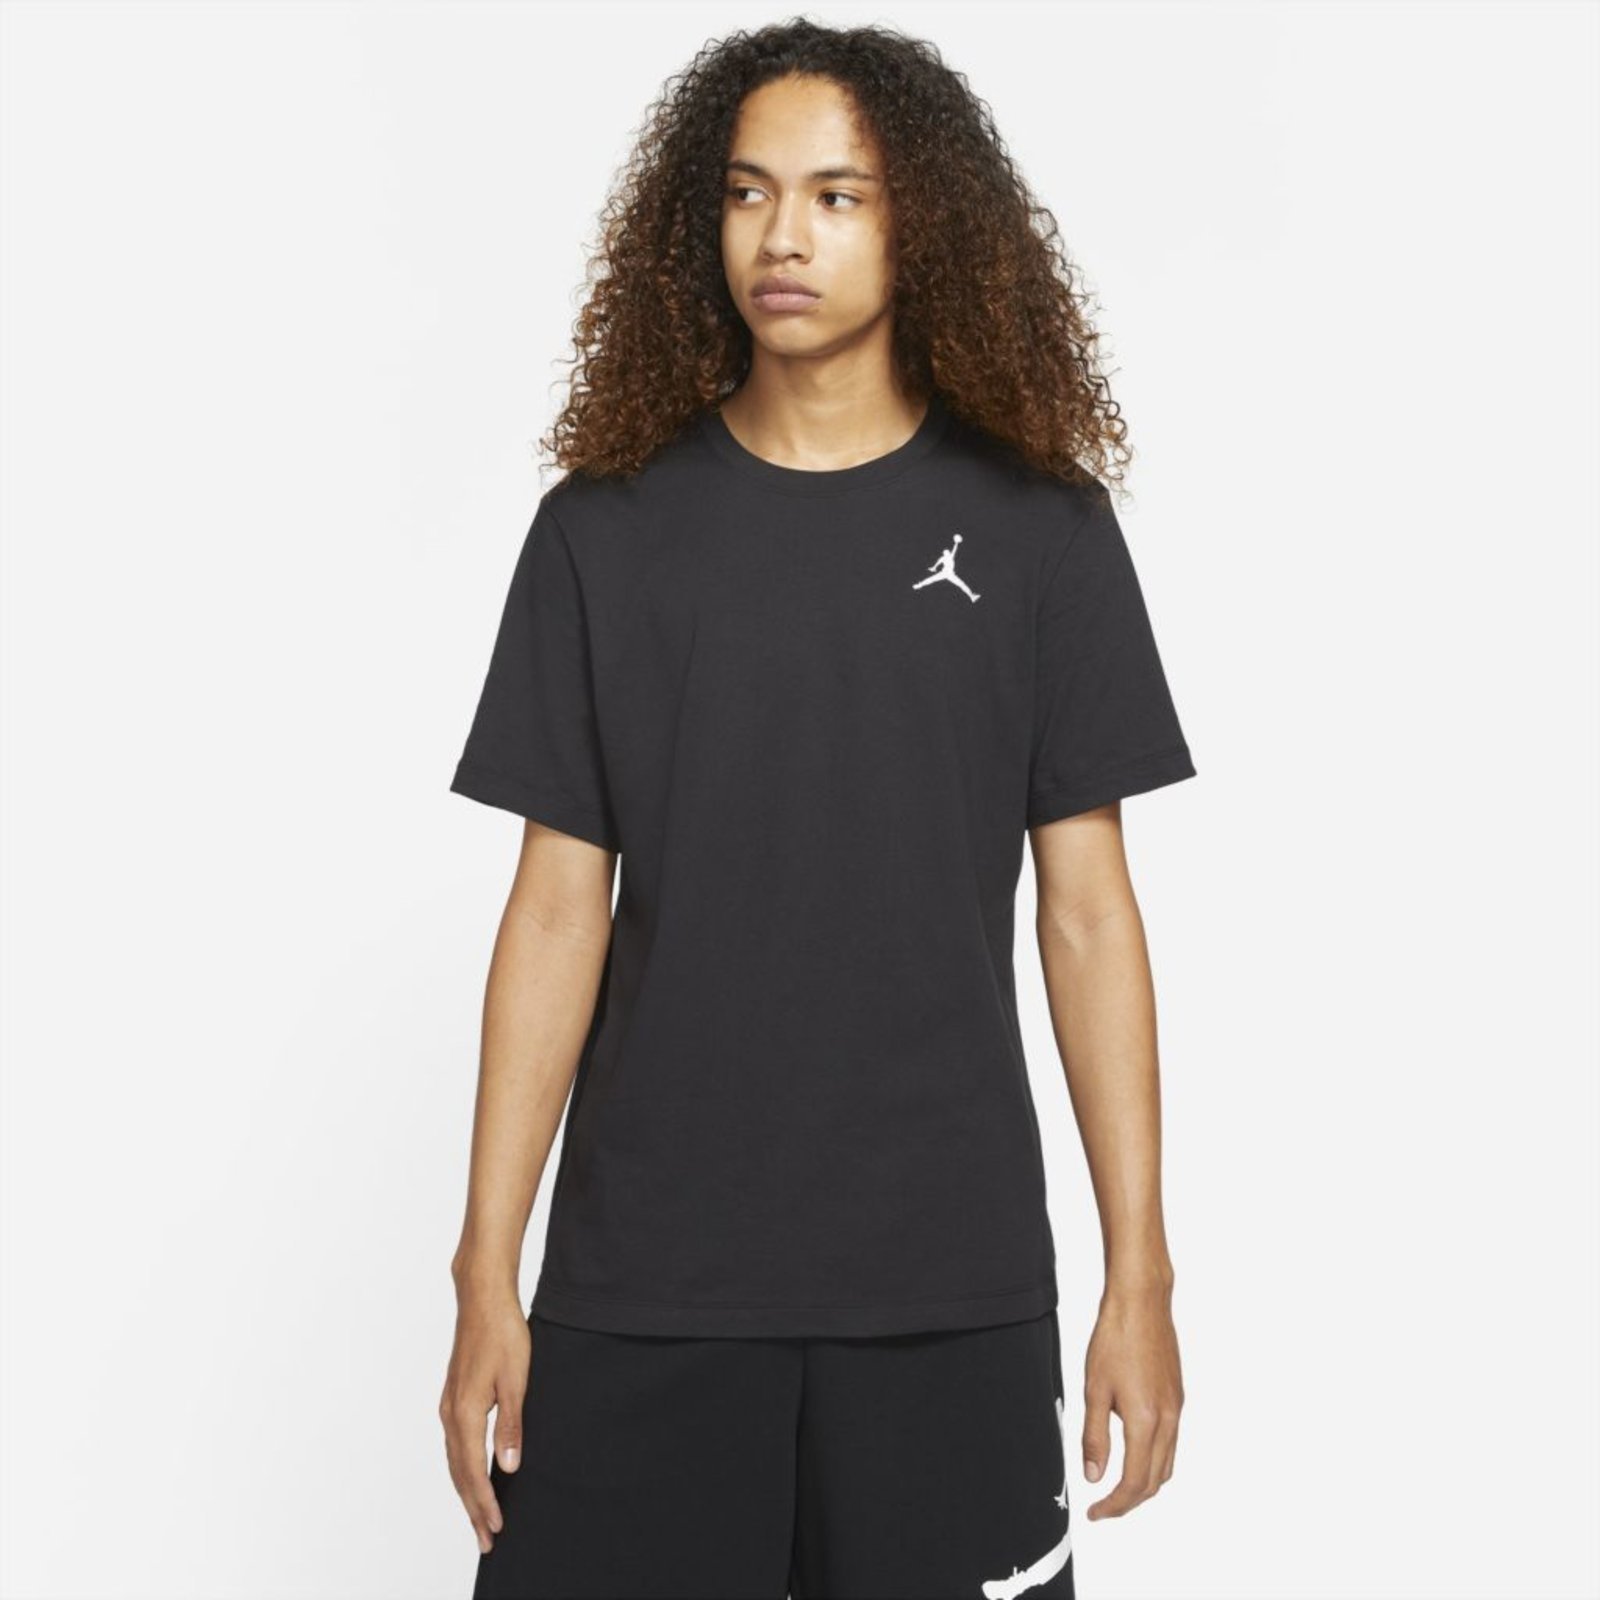 Camiseta Jordan Jumpman Nike Preto